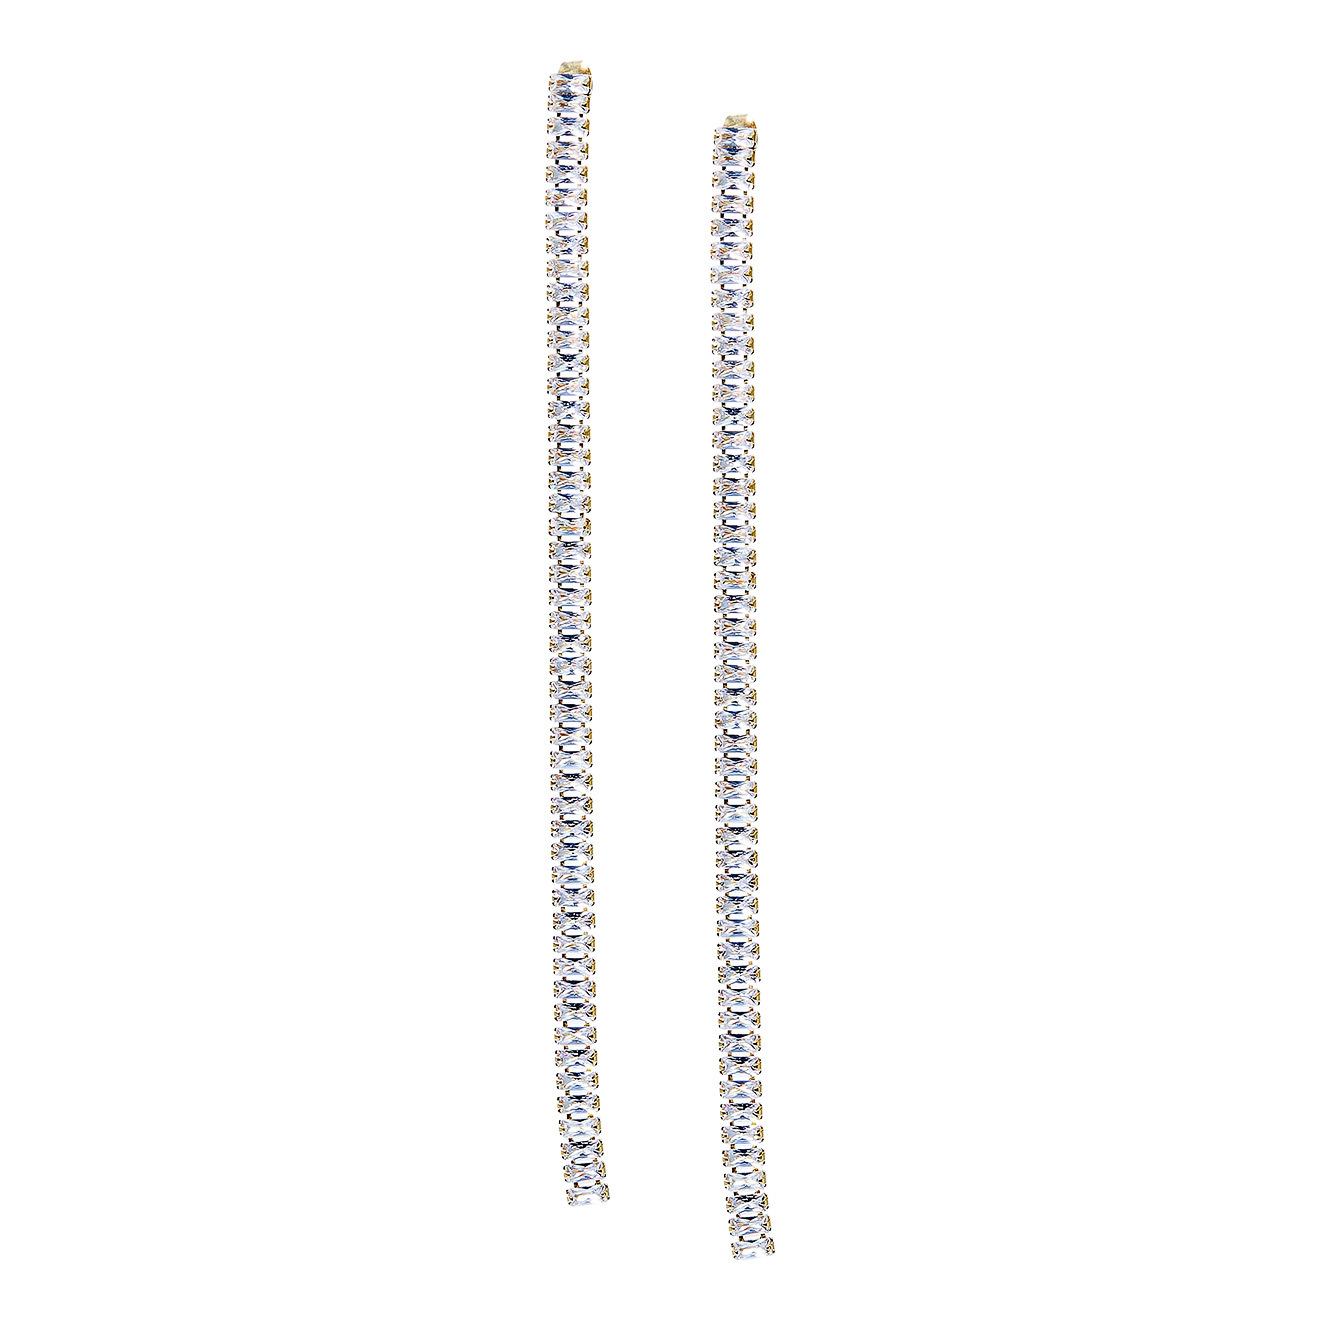 Herald Percy Золотистые длинные серьги-дорожки с кристаллами lisa smith золотистые длинные серьги с двумя кристаллами